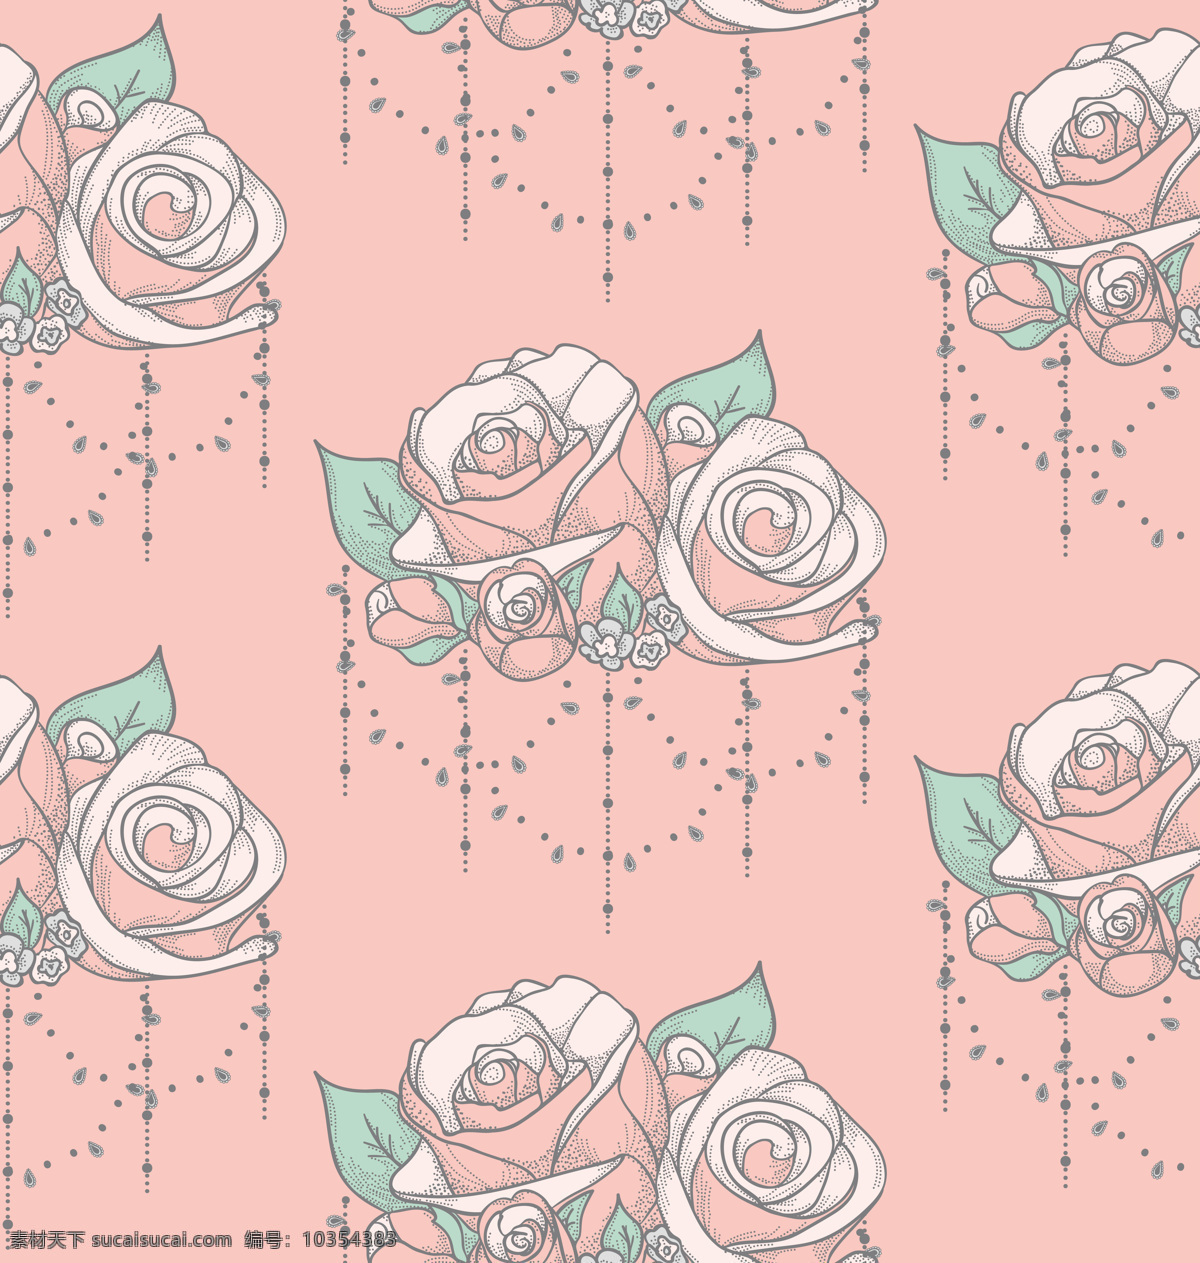 彩绘 古典 花朵 背景 白色 背景素材 粉红色 绿色 玫瑰花 叶子 珠帘